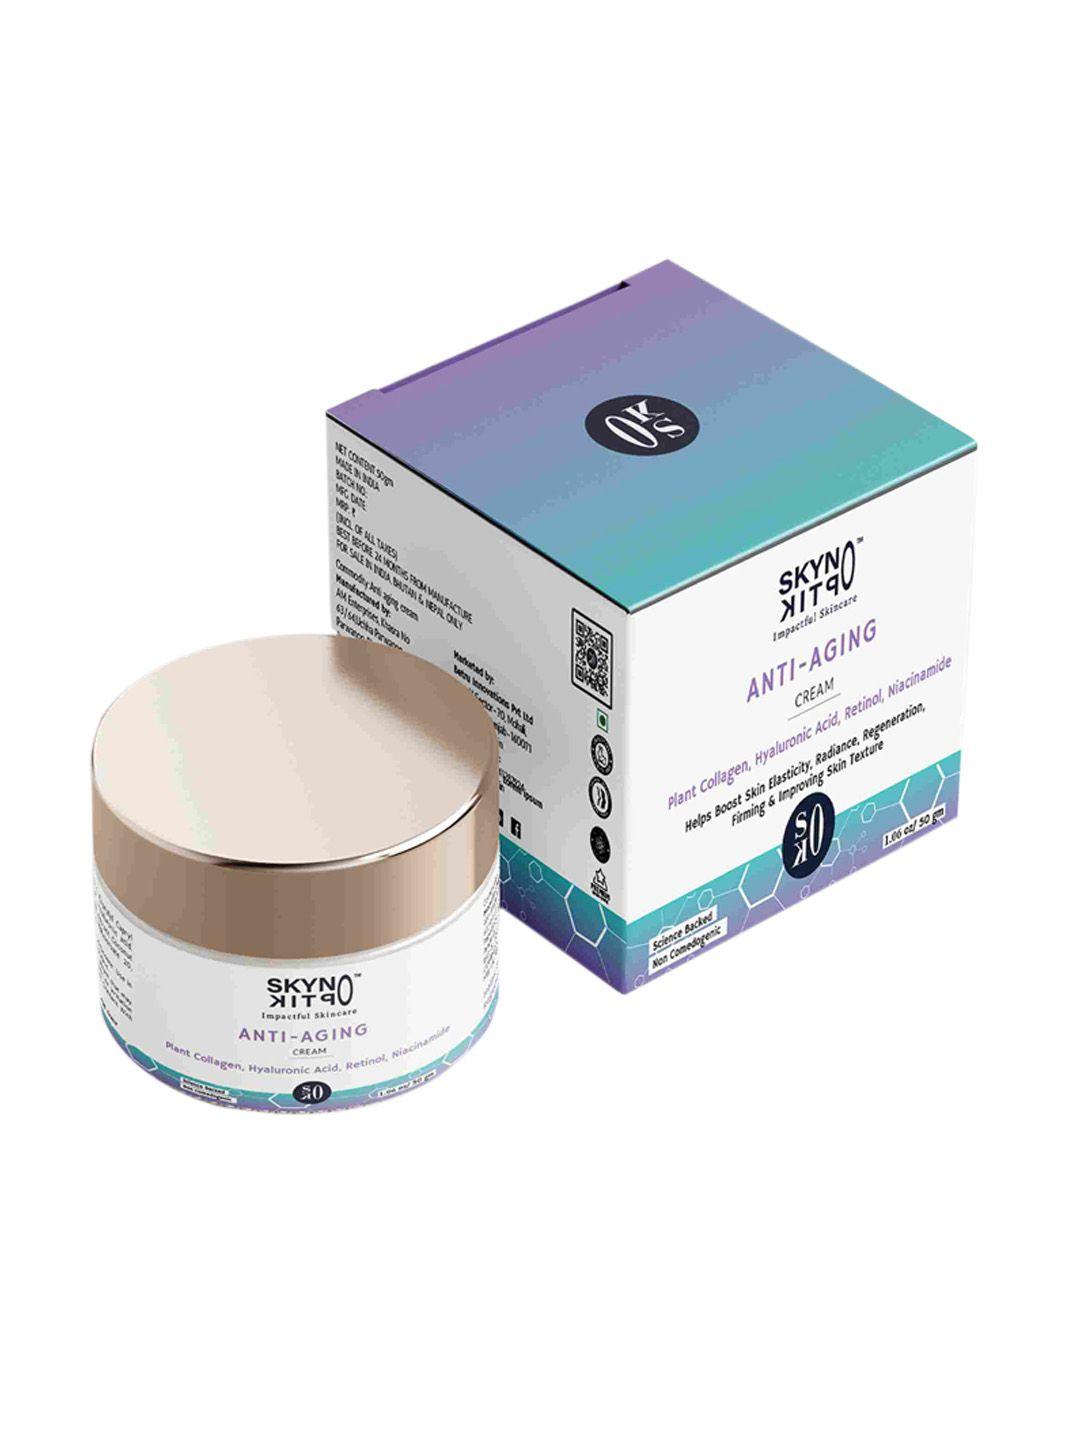 skynoptik anti aging cream, 50 gm